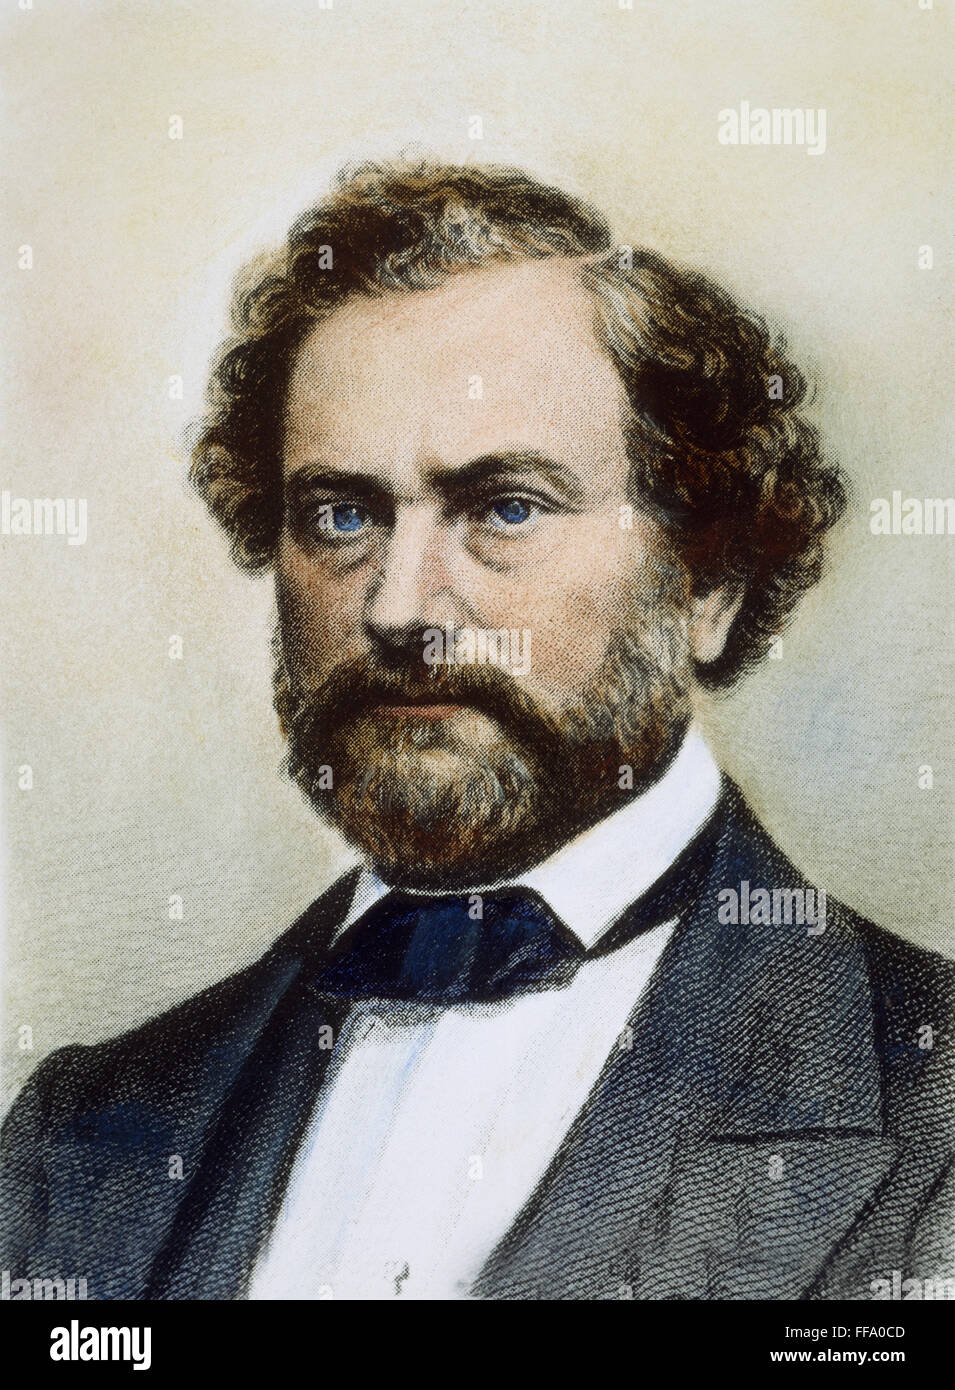 SAMUEL COLT (1814-1862). /nAmerican Erfinder. Stahl-Gravur, American, 19. Jahrhundert. Stockfoto